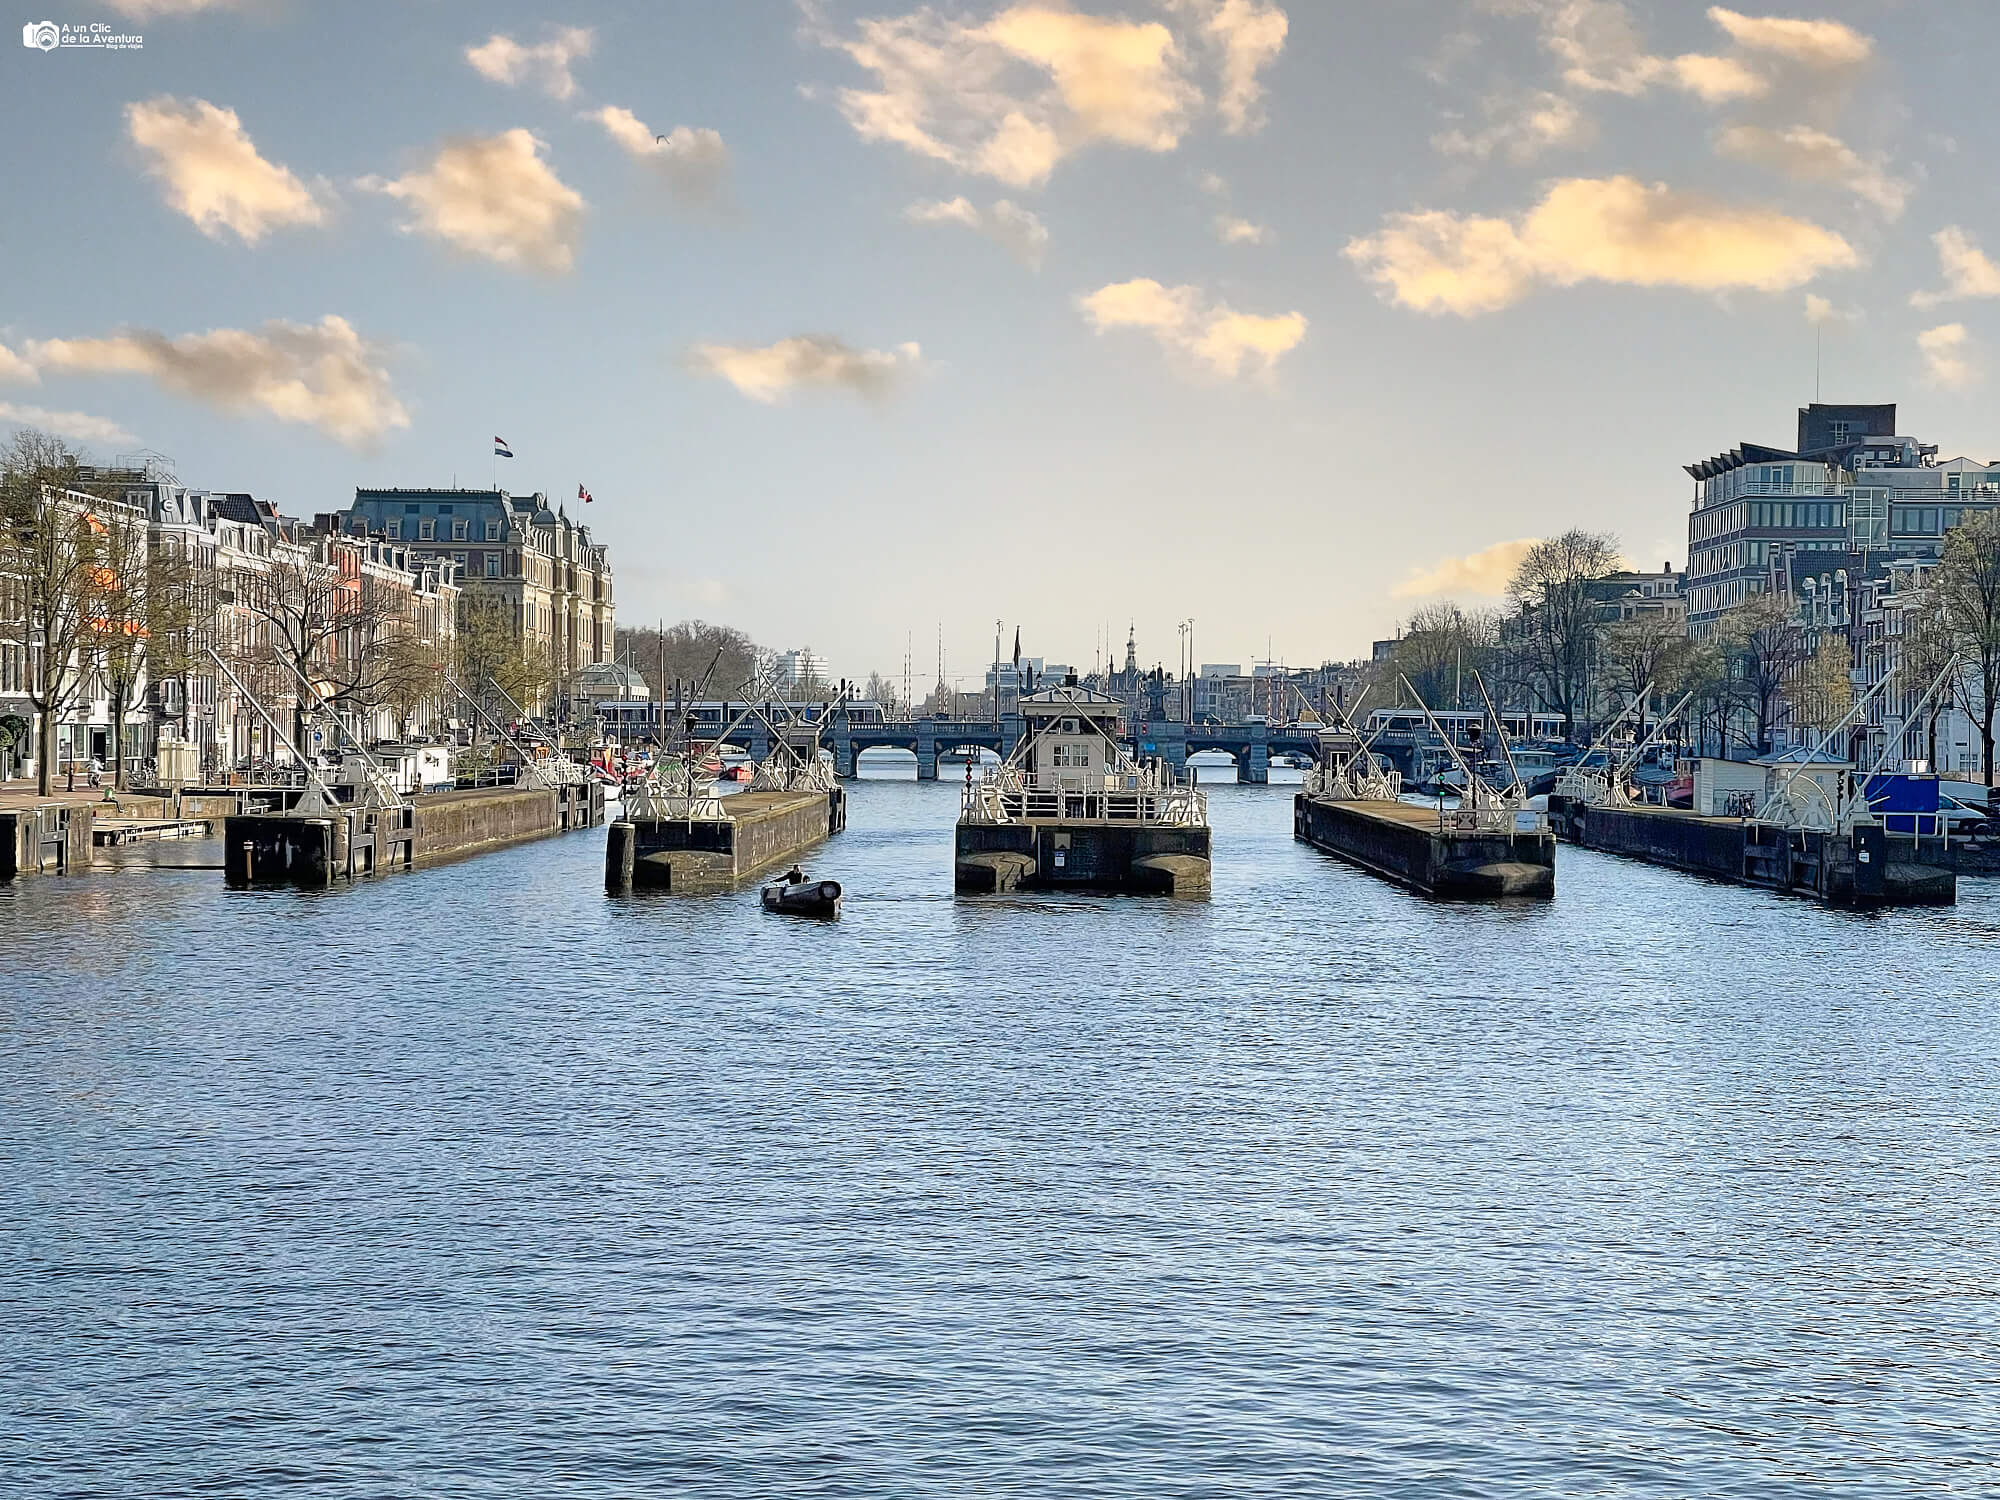 Compuertas del río Amstel, que ver en Amsterdam